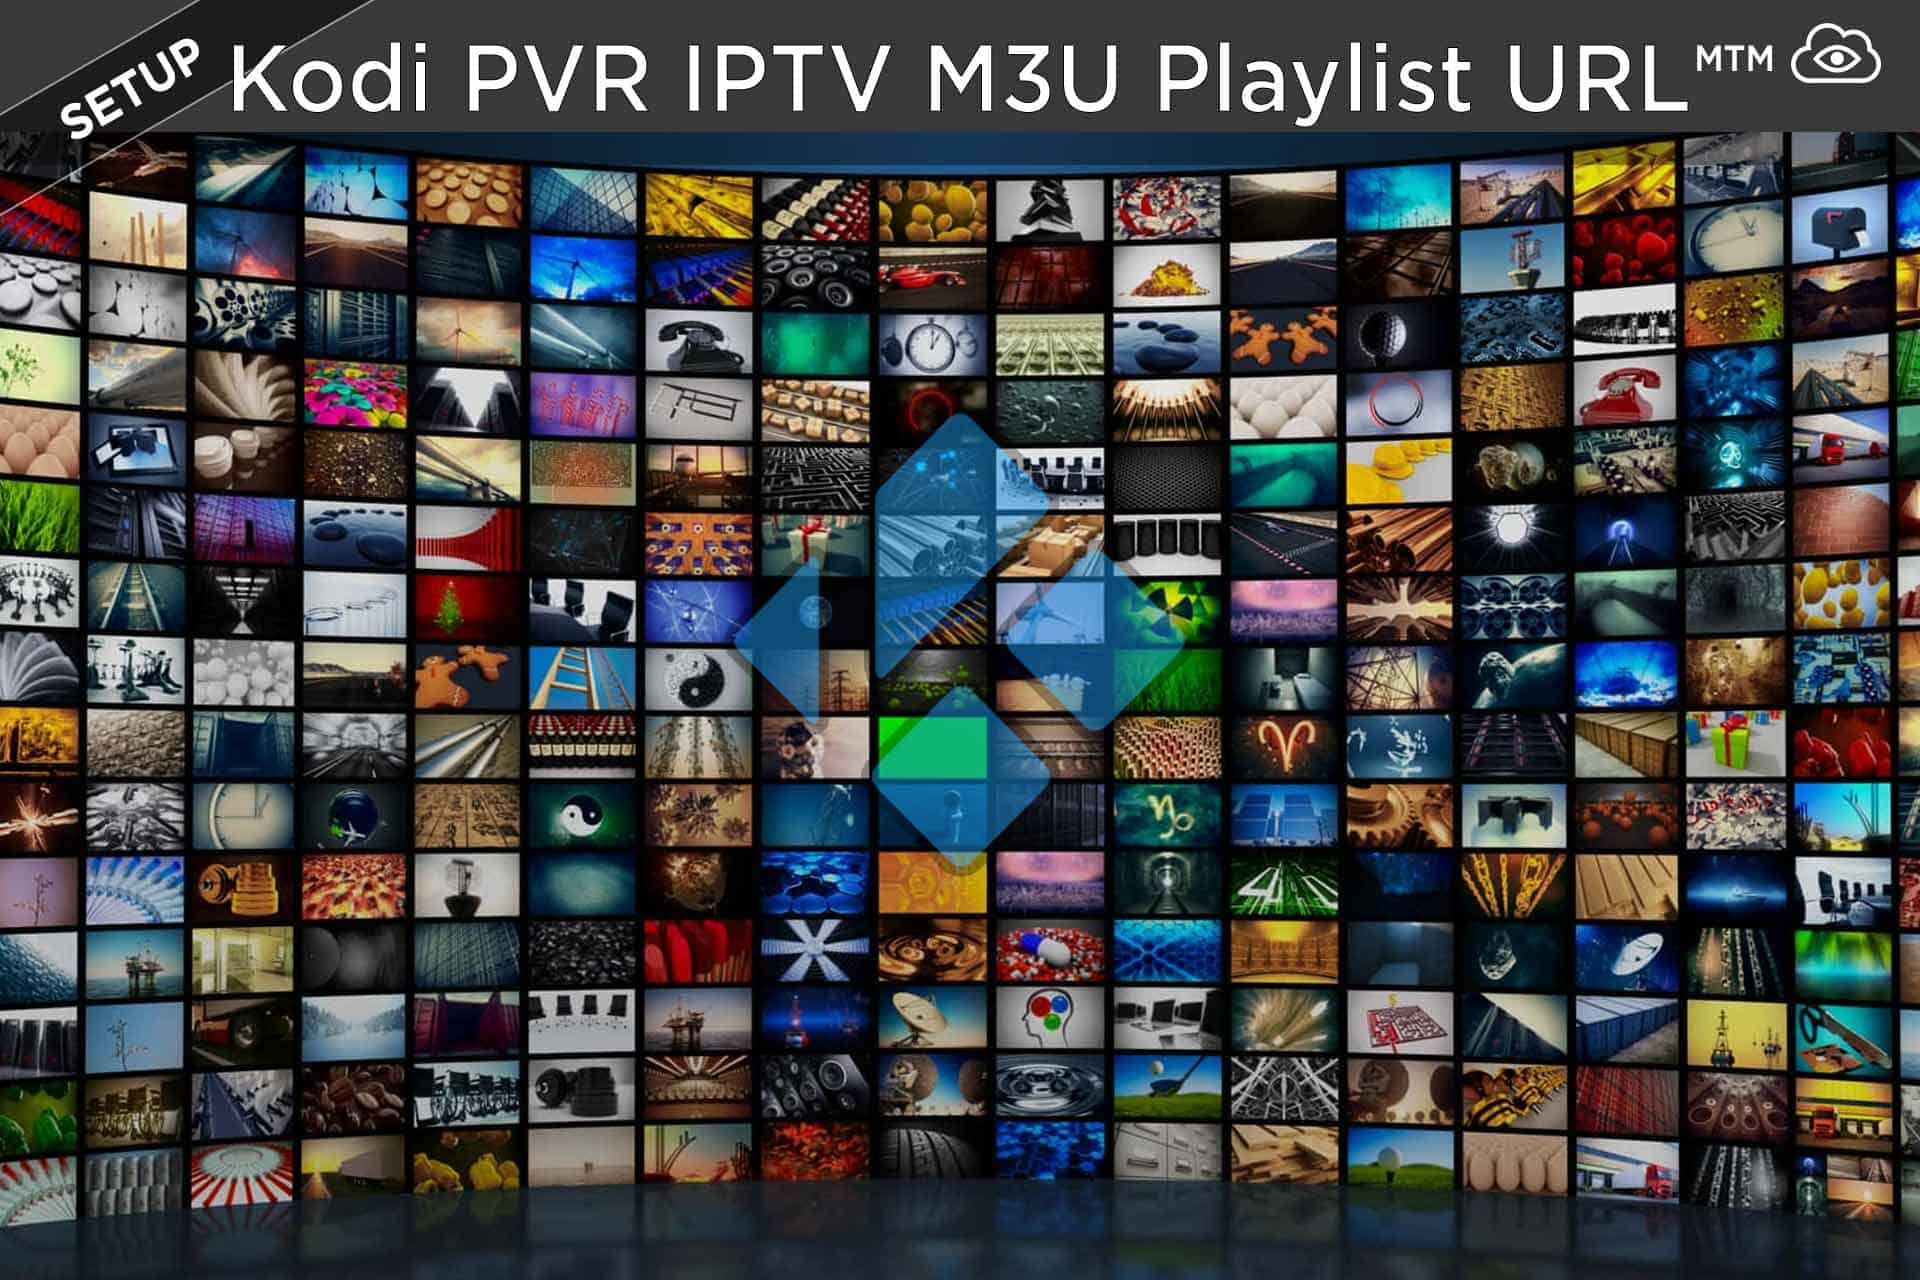 Nola konfiguratu IPTV M3U erreprodukzio-zerrendaren URLa Kodi PVR Simple Client 2020-n
